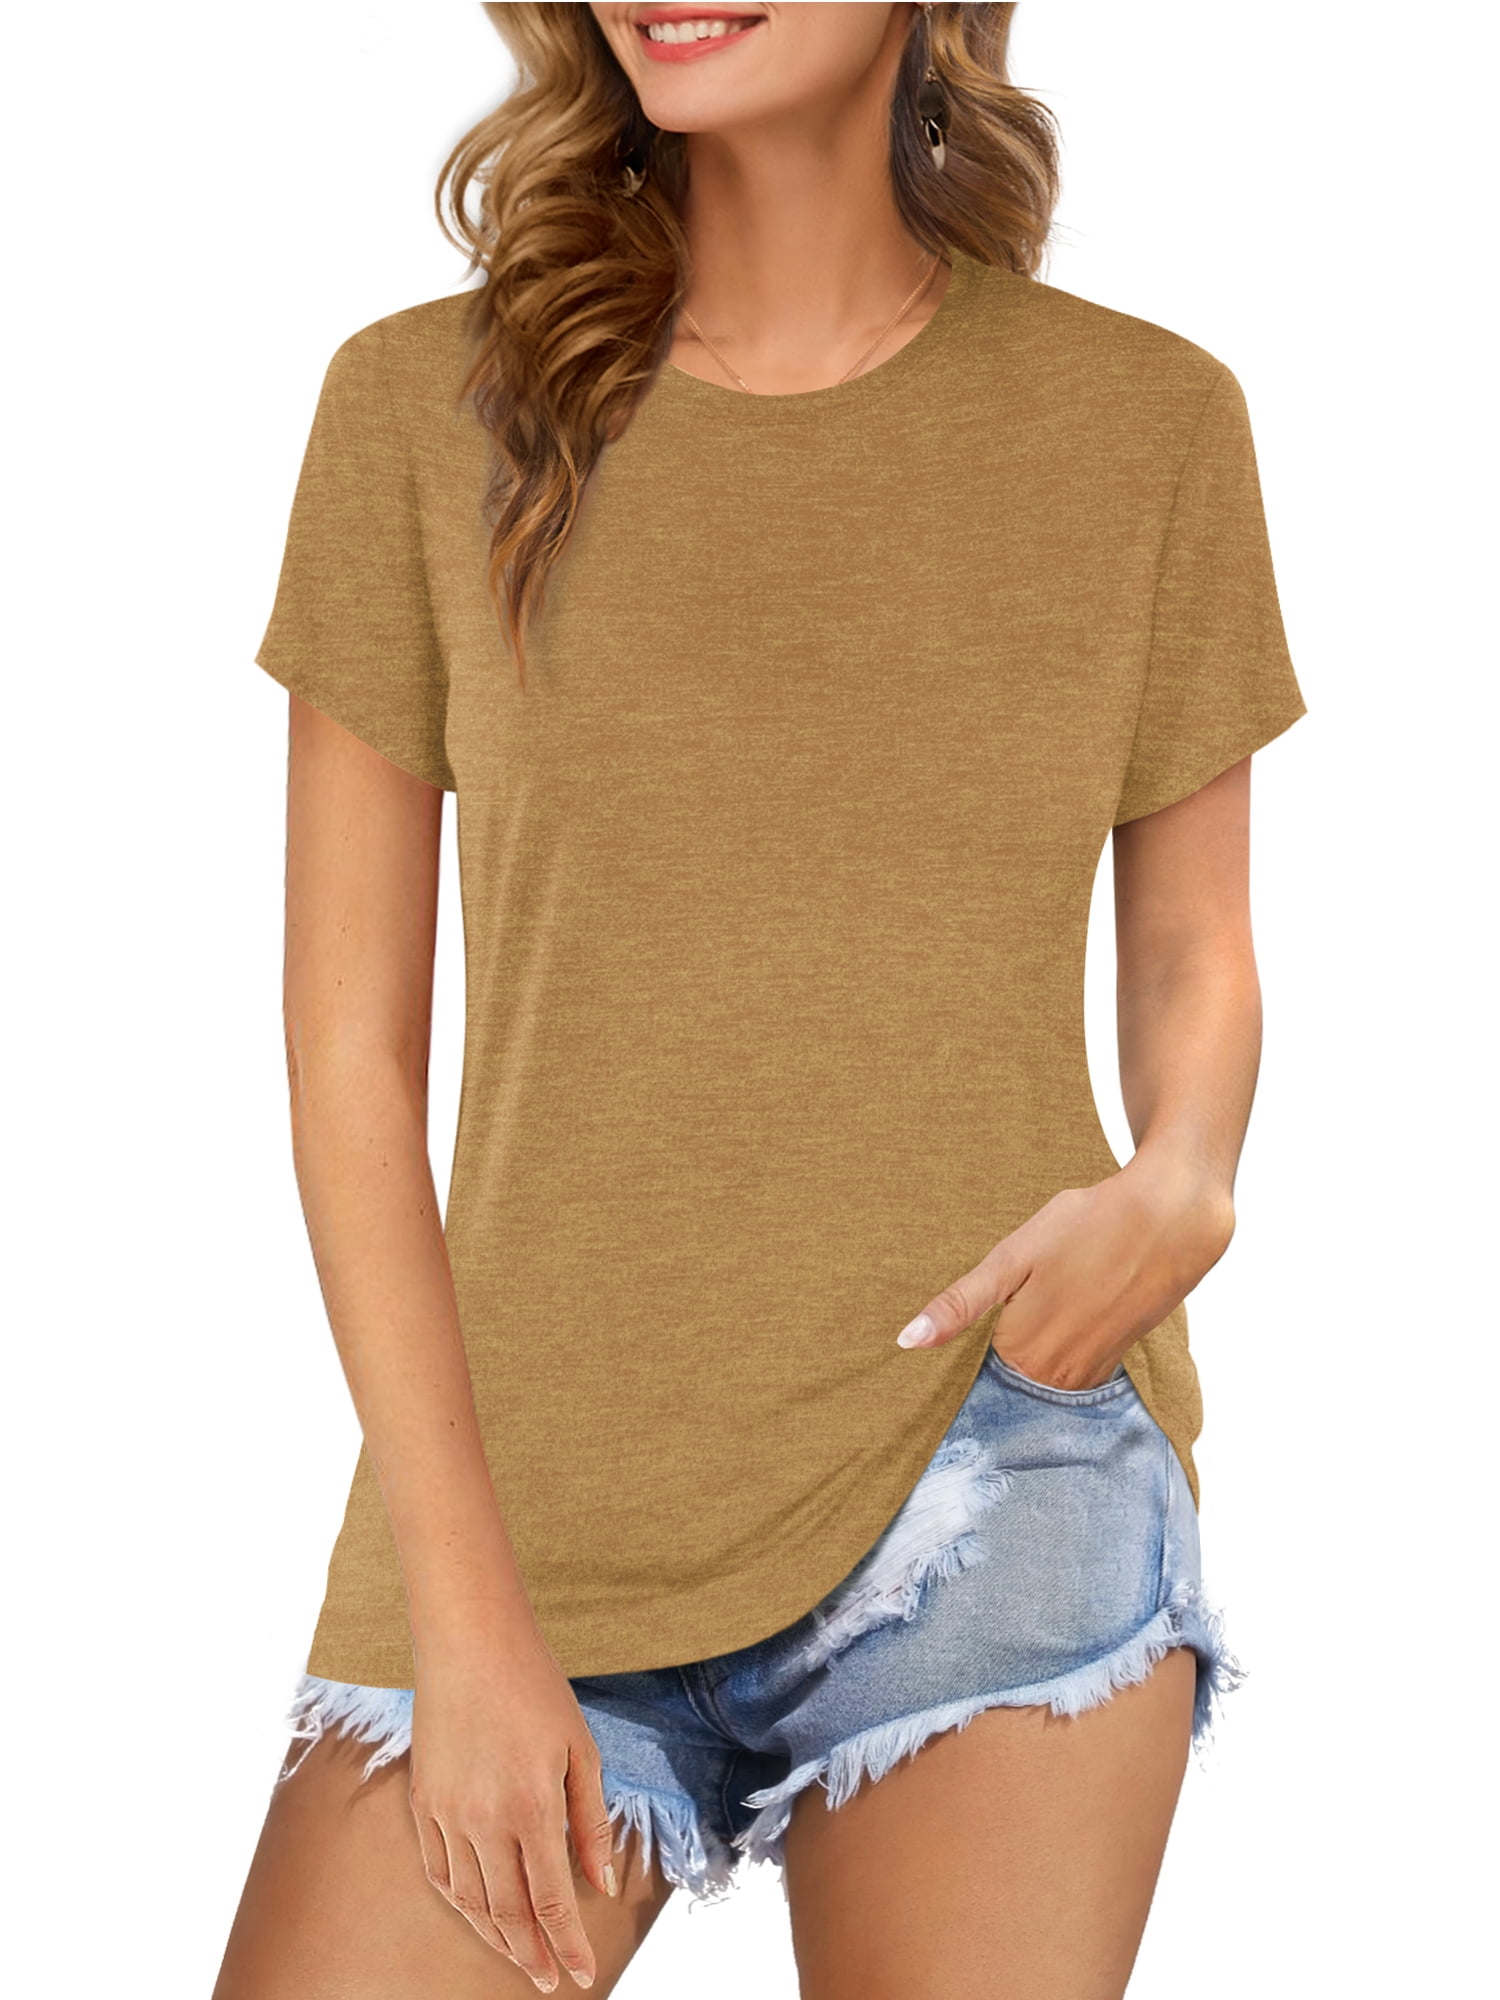 Compre Woman Summer Fashion Roblox T-Shirt Round Neck Short Sleeve Shirt  Casual Sport Cotton Blouse barato - preço, frete grátis, avaliações reais  com fotos — Joom